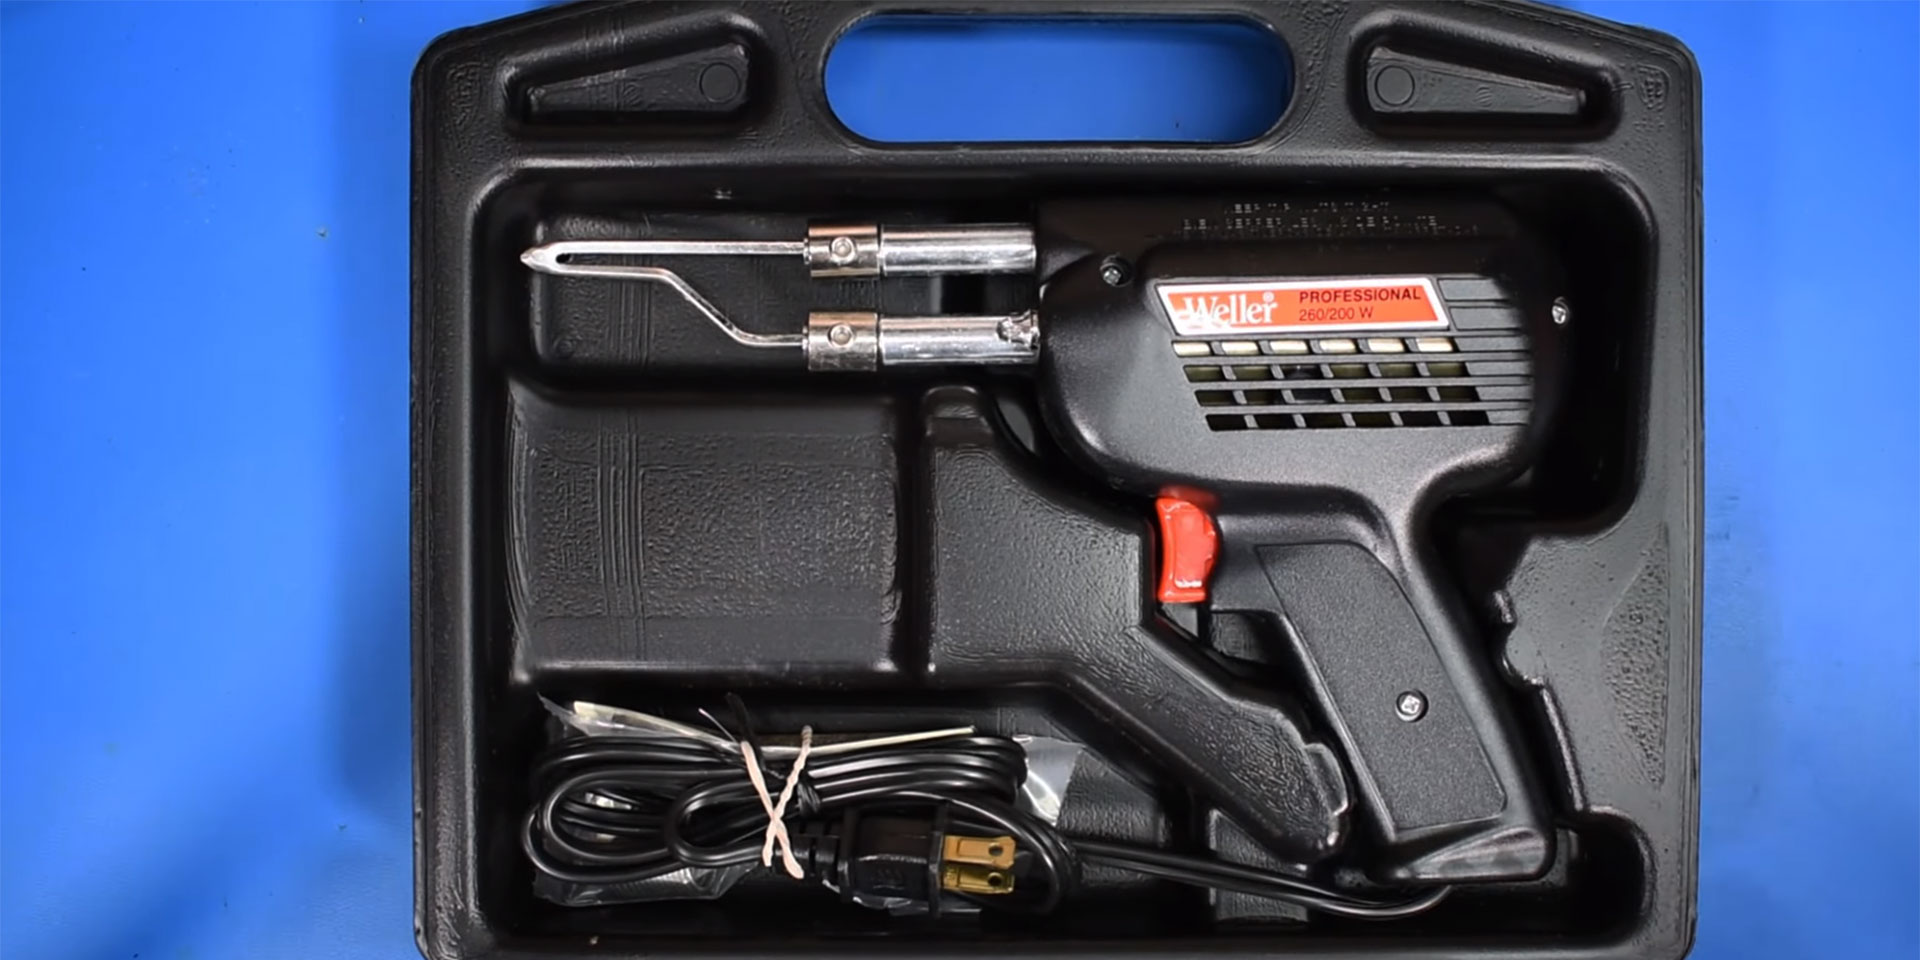 200 300W Weller D650PK Industrial Dual-Heat Gun Kit in Case 120V 